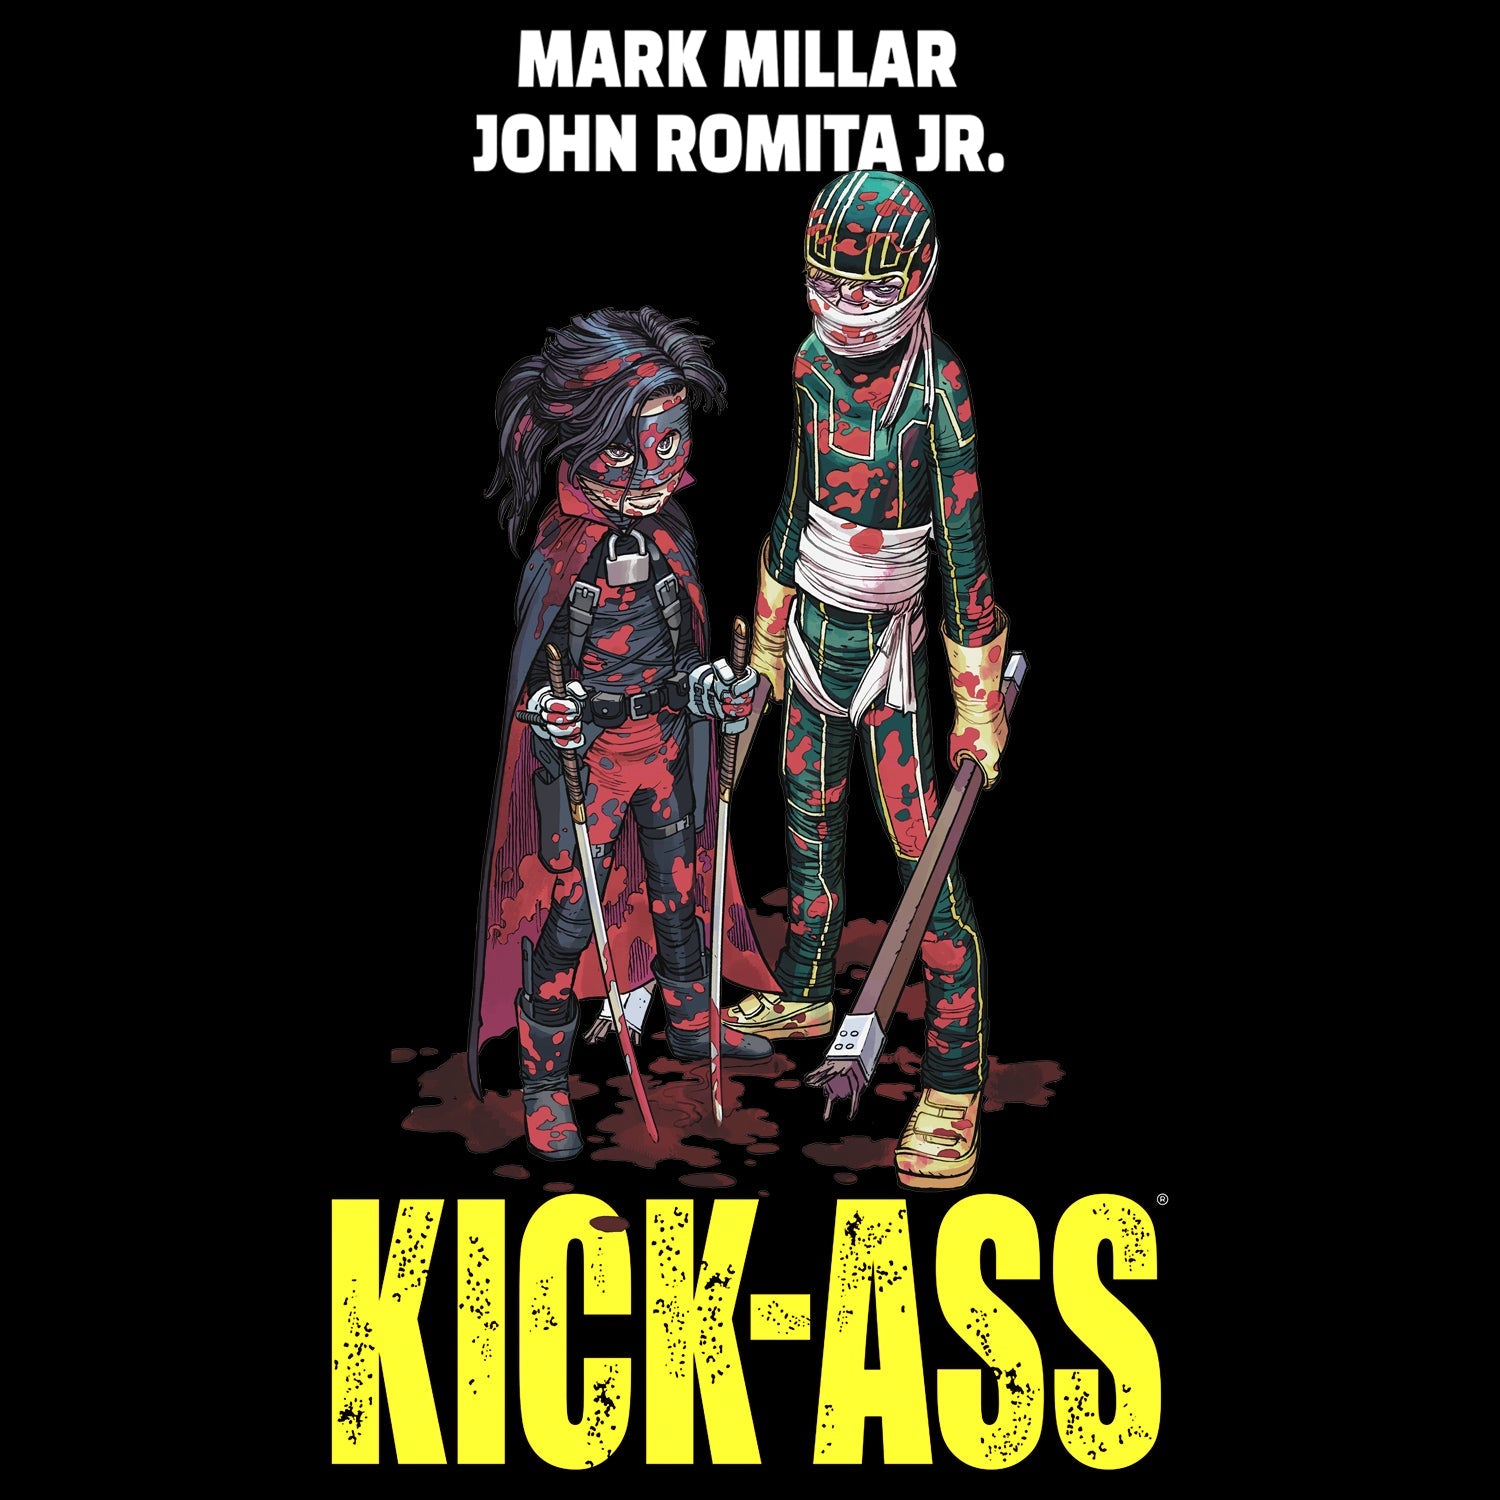 Kick-Ass Poster Hit Girl Bloody Official Men's T-Shirt ()